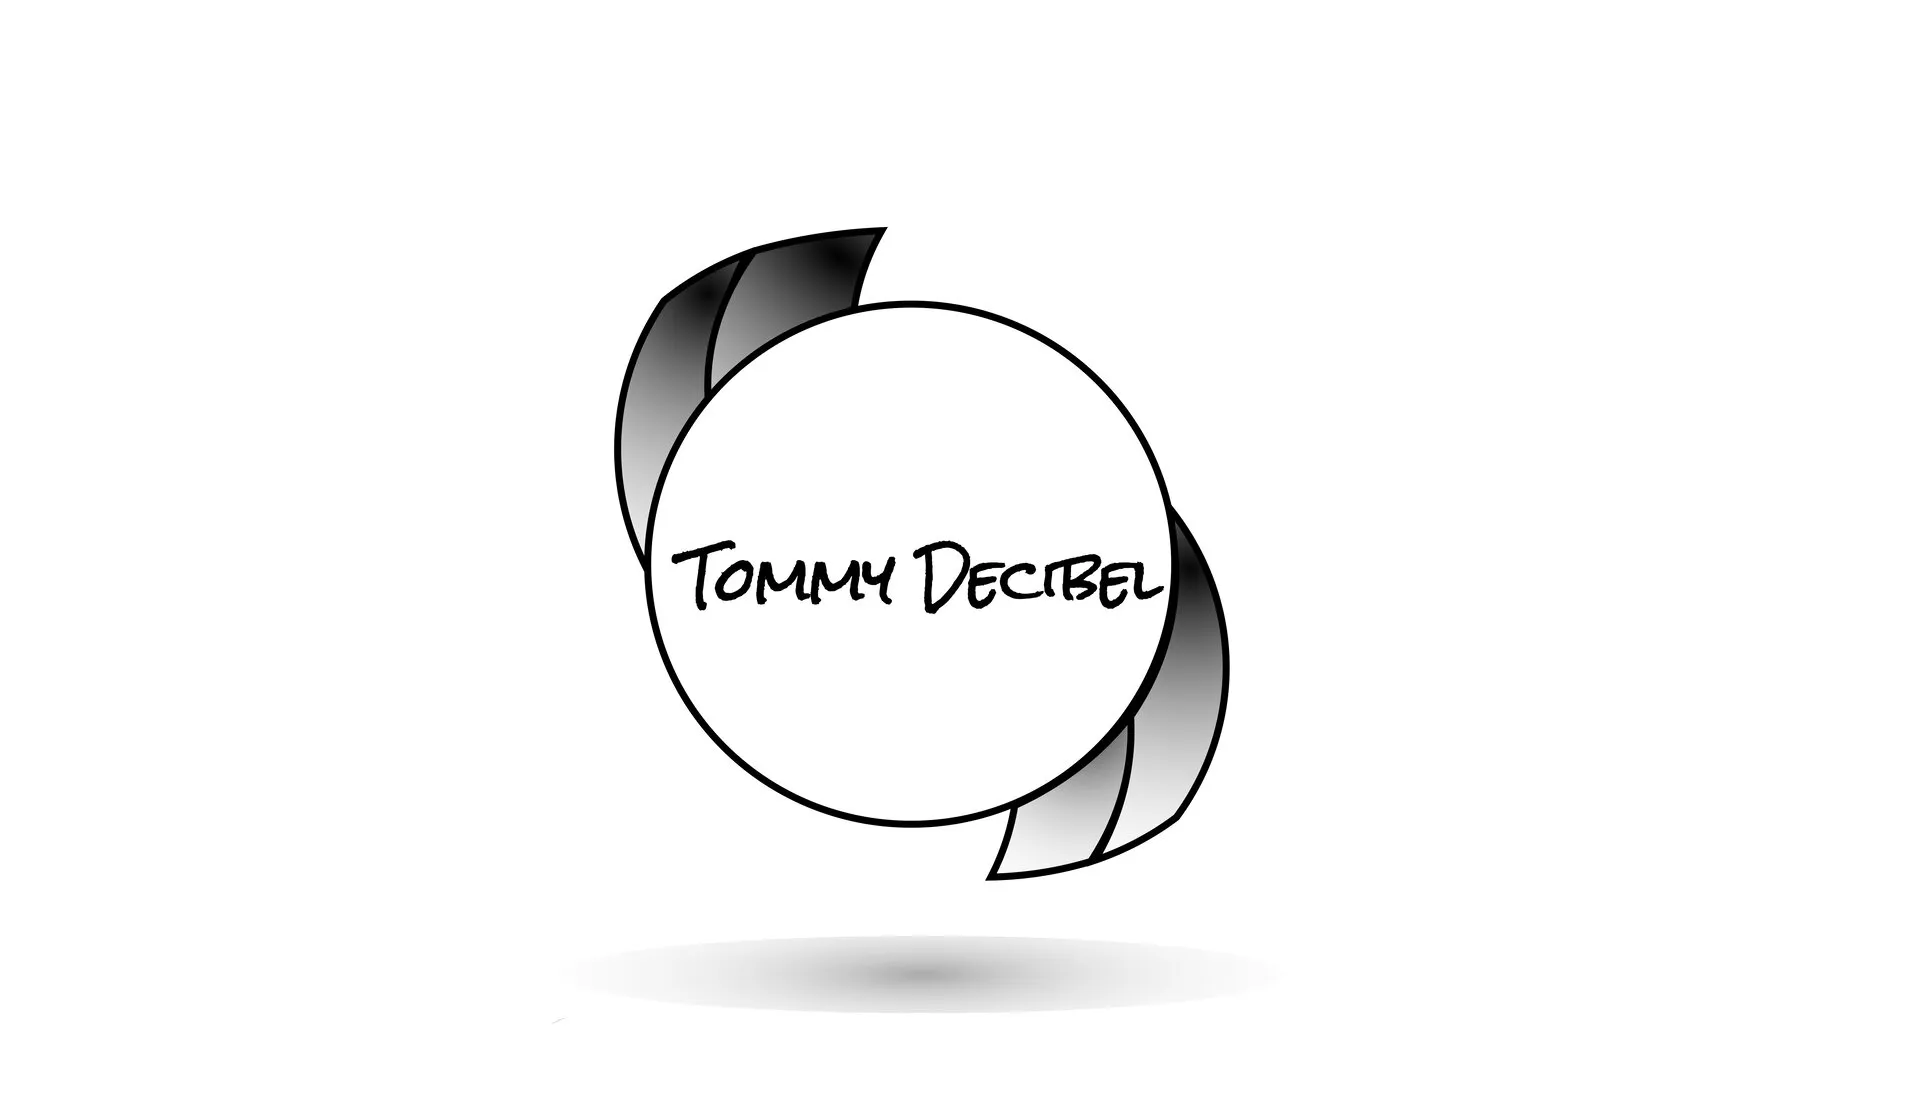 TommyDecibel.com